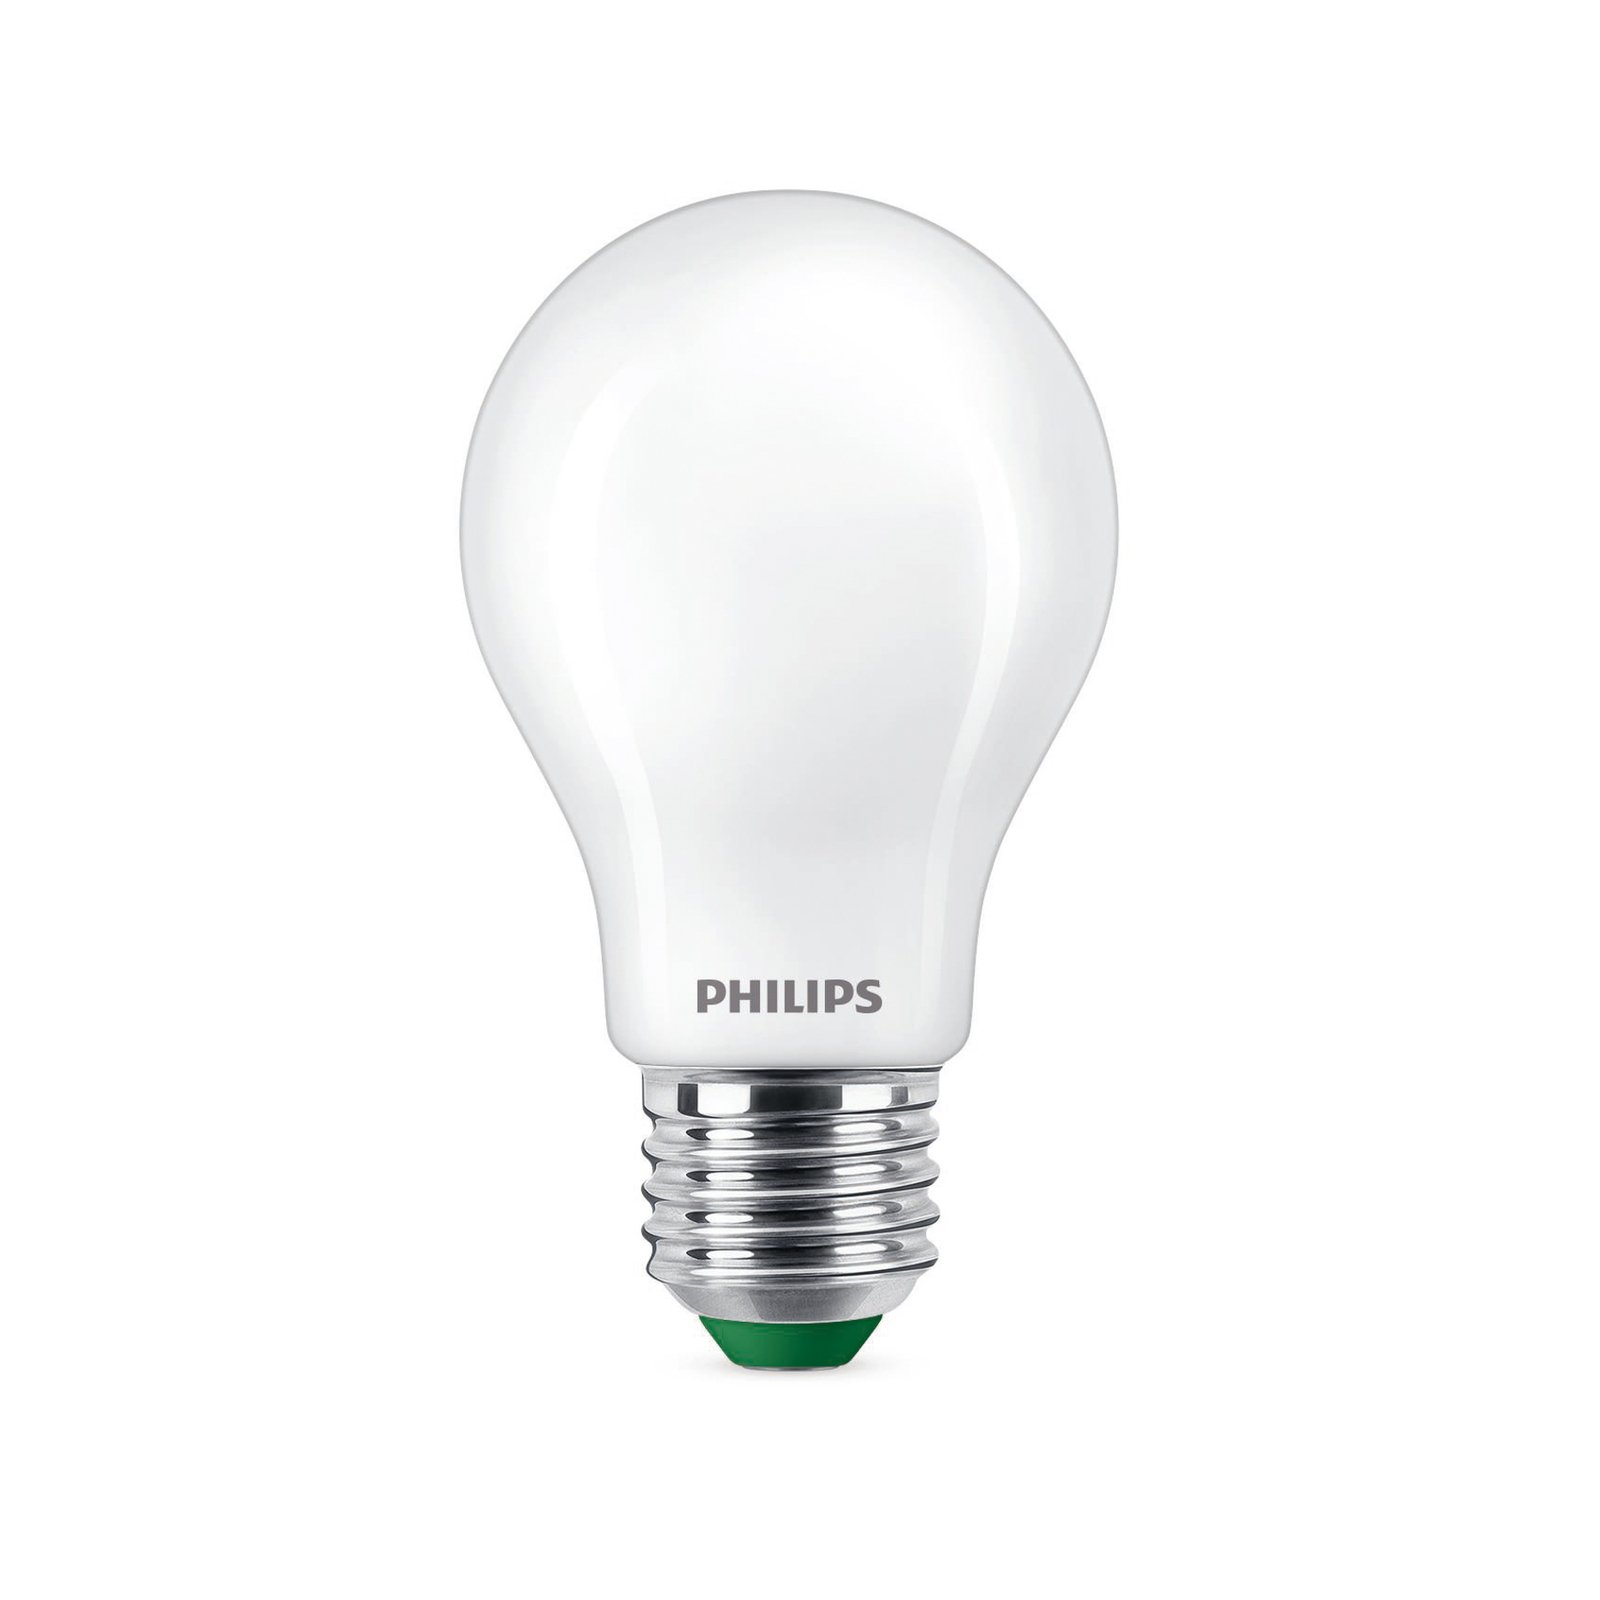 Philips E27 LED A60 4W 840lm 4 000K mate